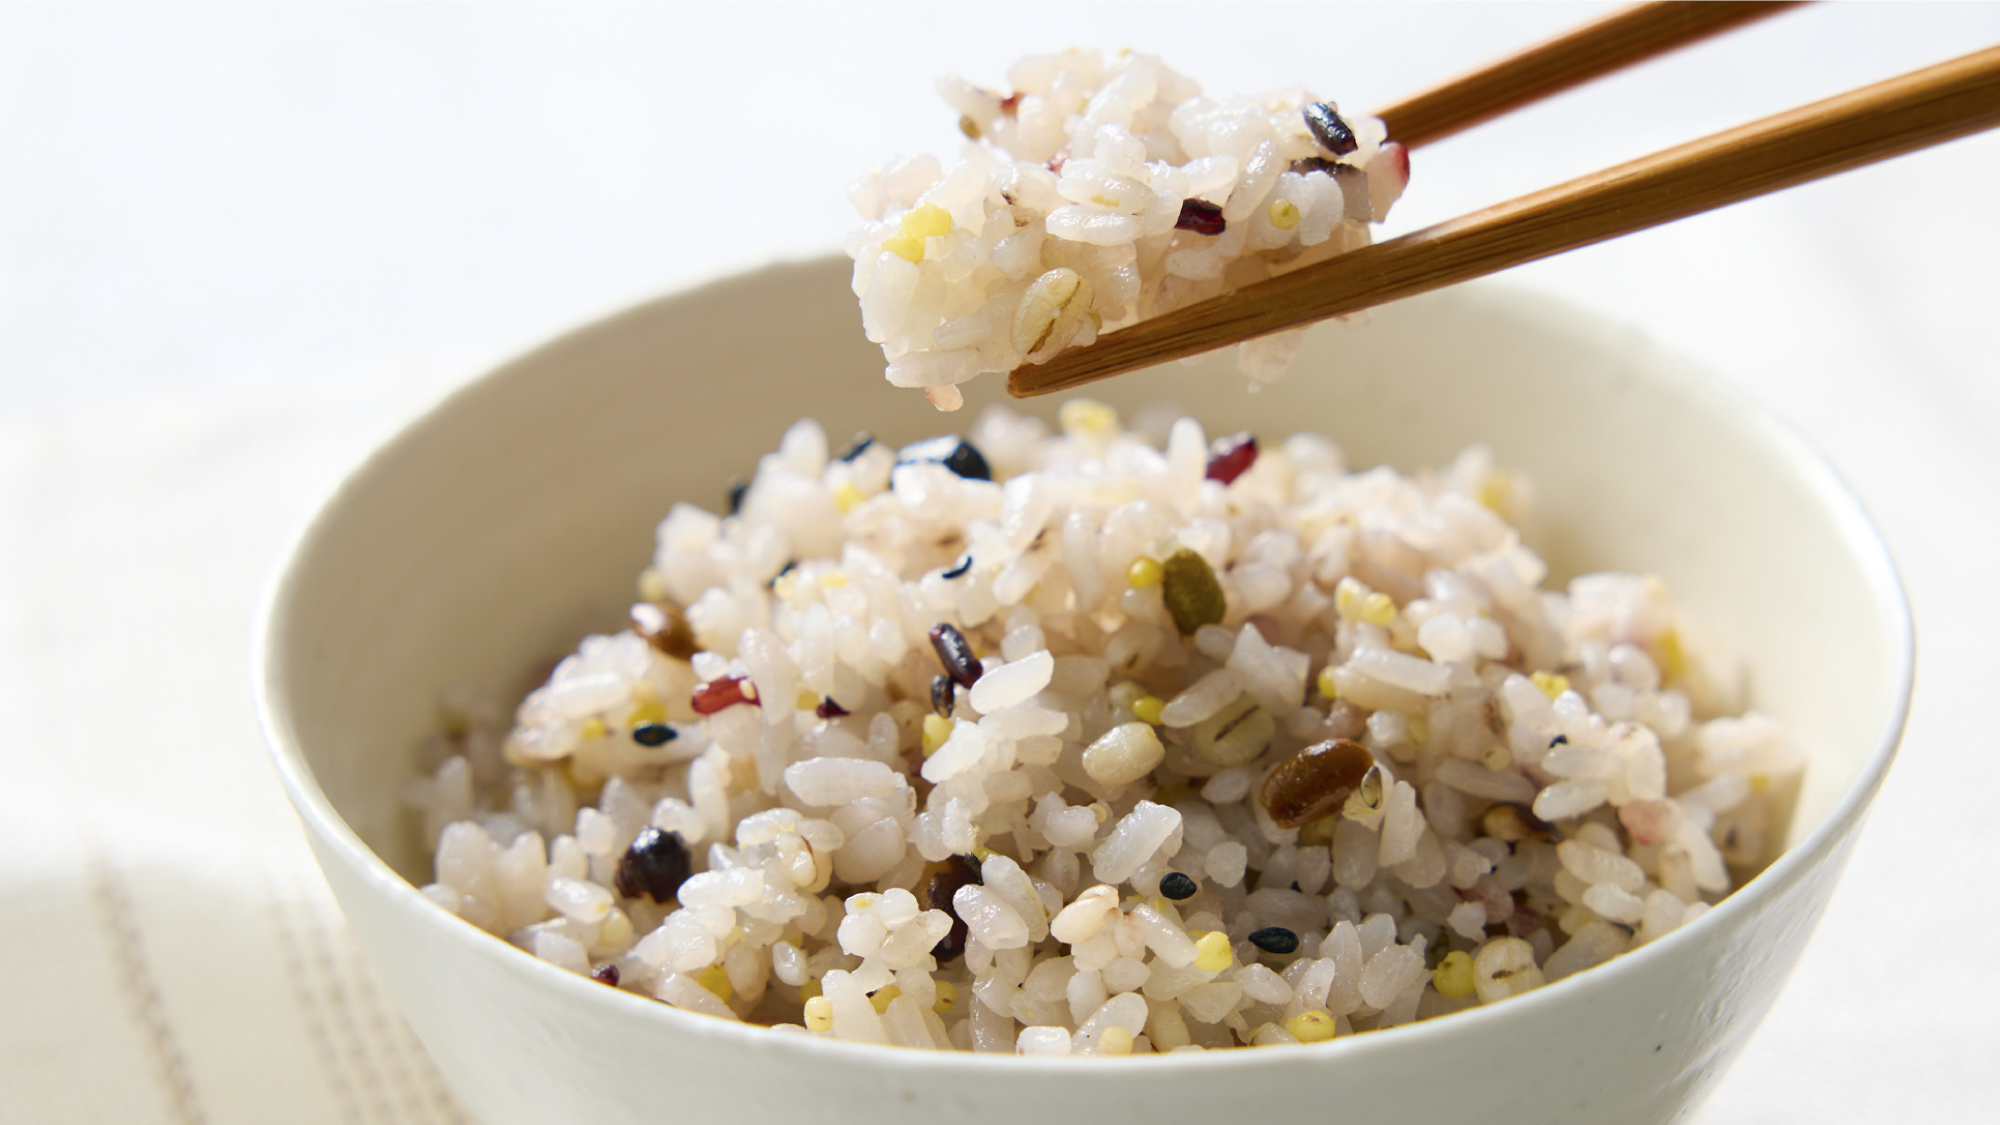 【雑穀米】複数種類の穀物を使用した、食物繊維とミネラルたっぷりな雑穀米。